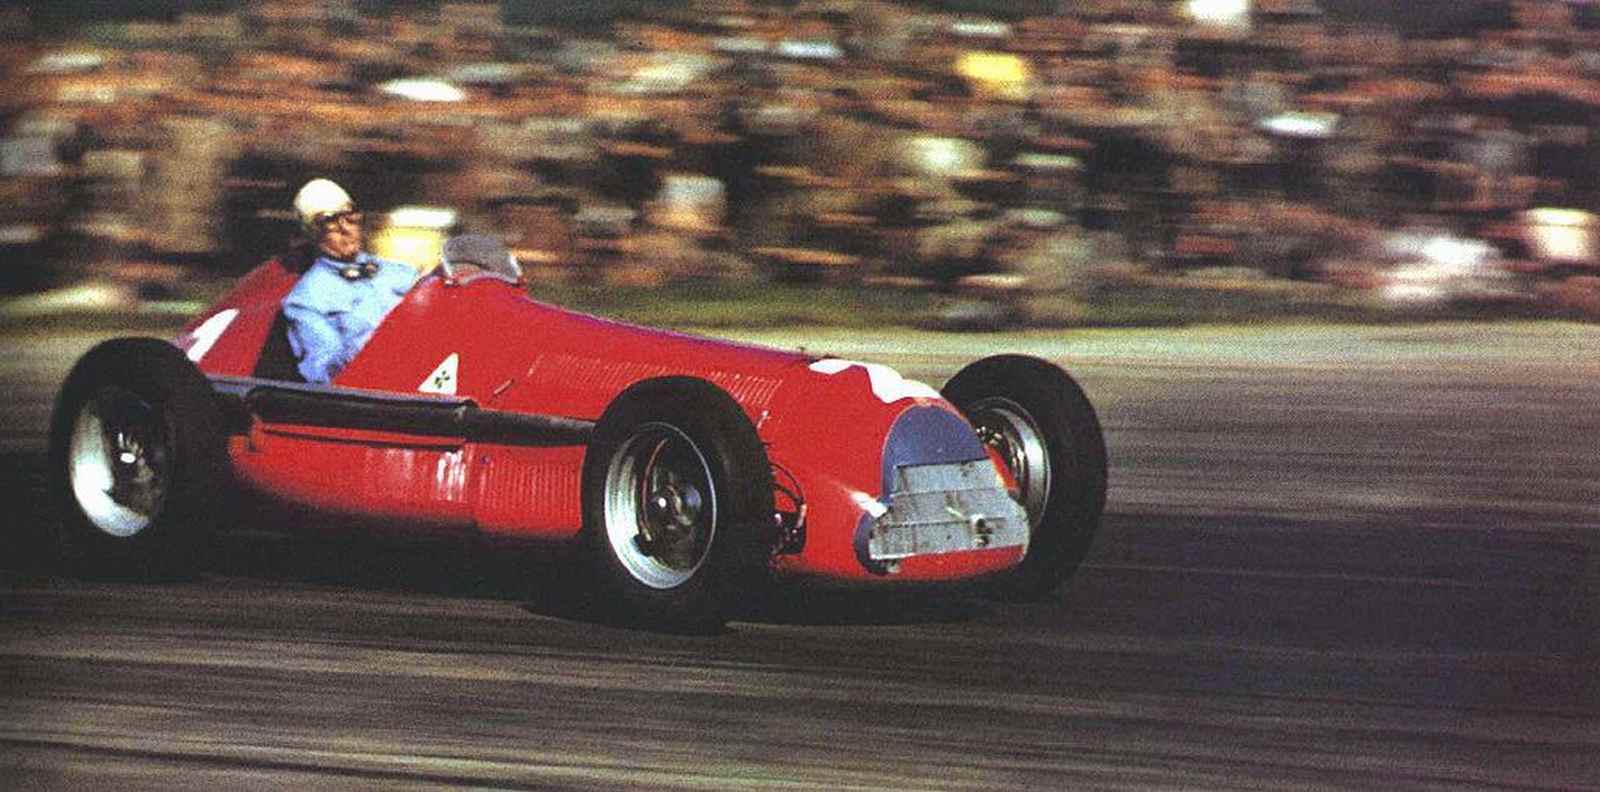 Com a Alfa Romeo, Giuseppe Farina foi o primeiro campeão mundial de F1, em 1950